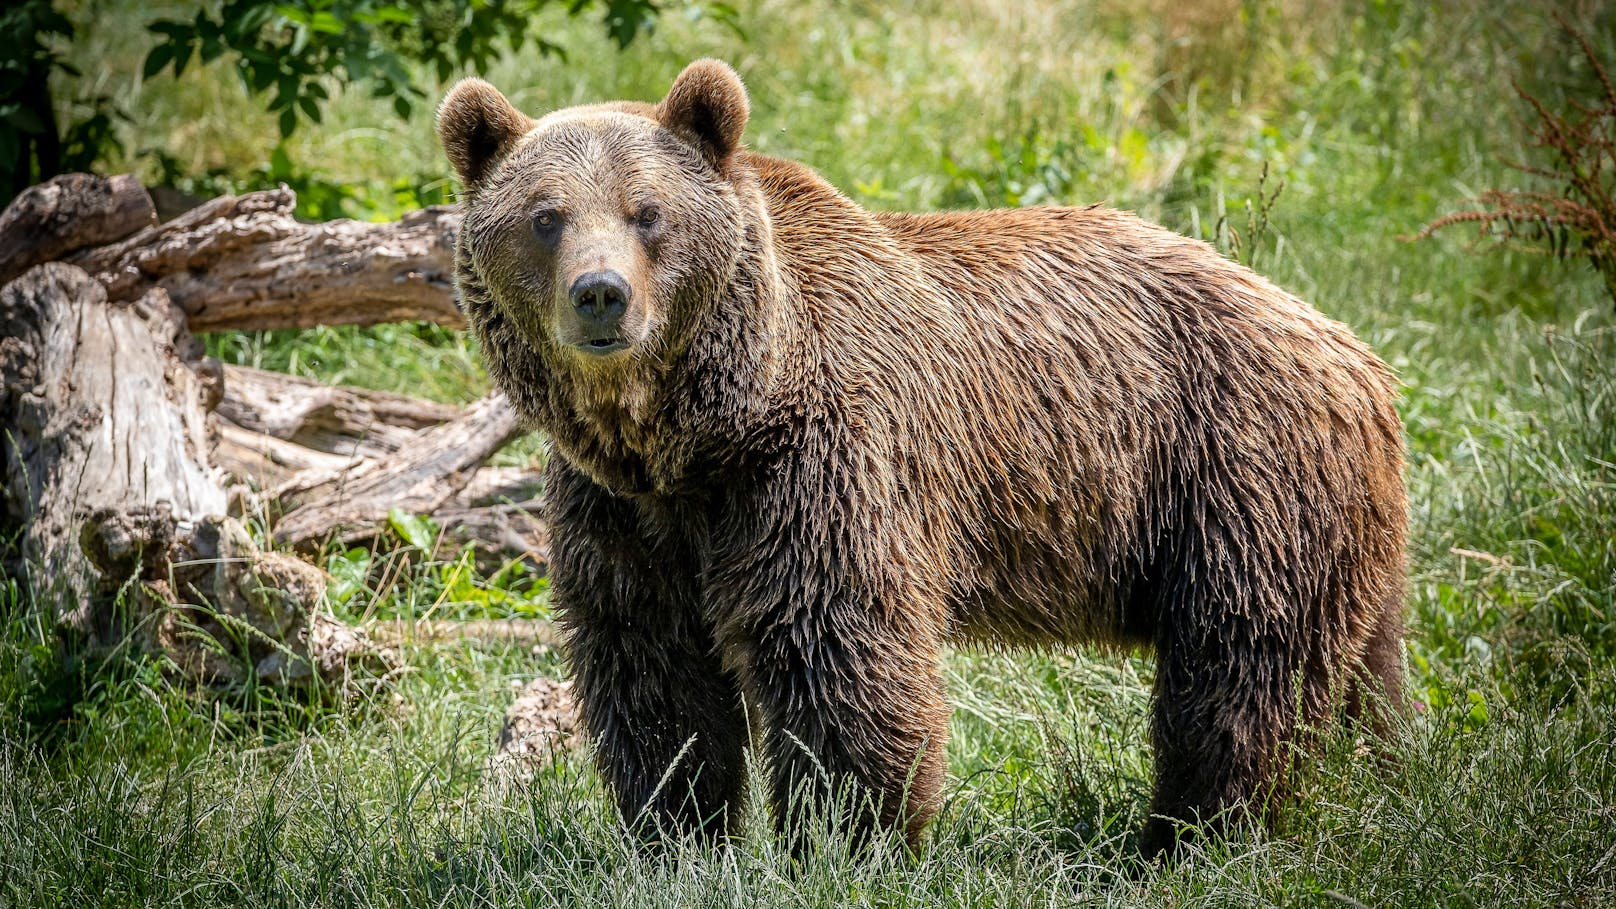 In Italien ist eine hitzige Debatte um das Zusammenleben von Bär und Mensch entbrannt. (Symbolbild)